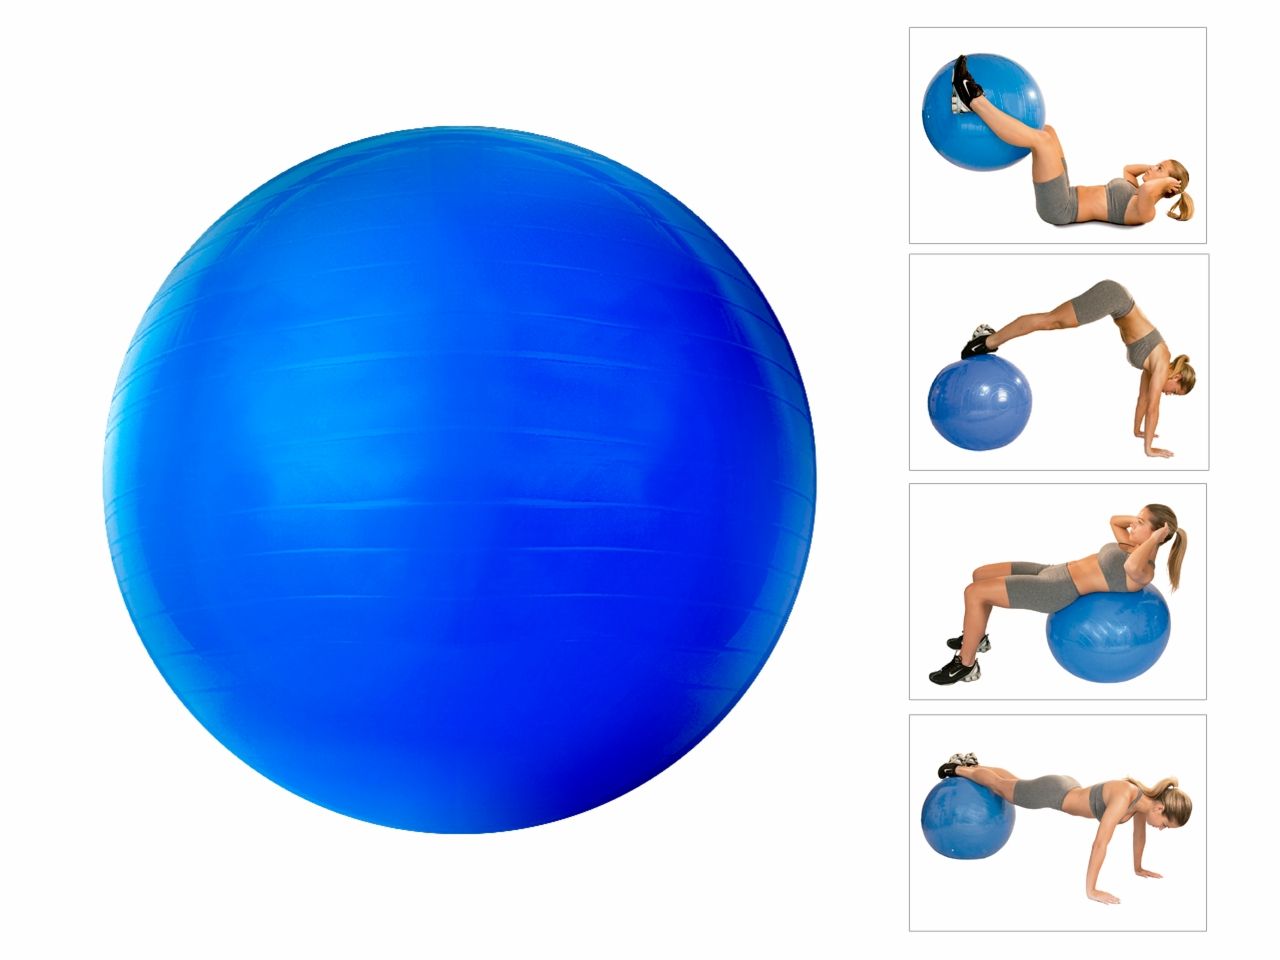 Bola de Pilates Suiça Oxer Gym Ball com Bomba de Ar - 75cm